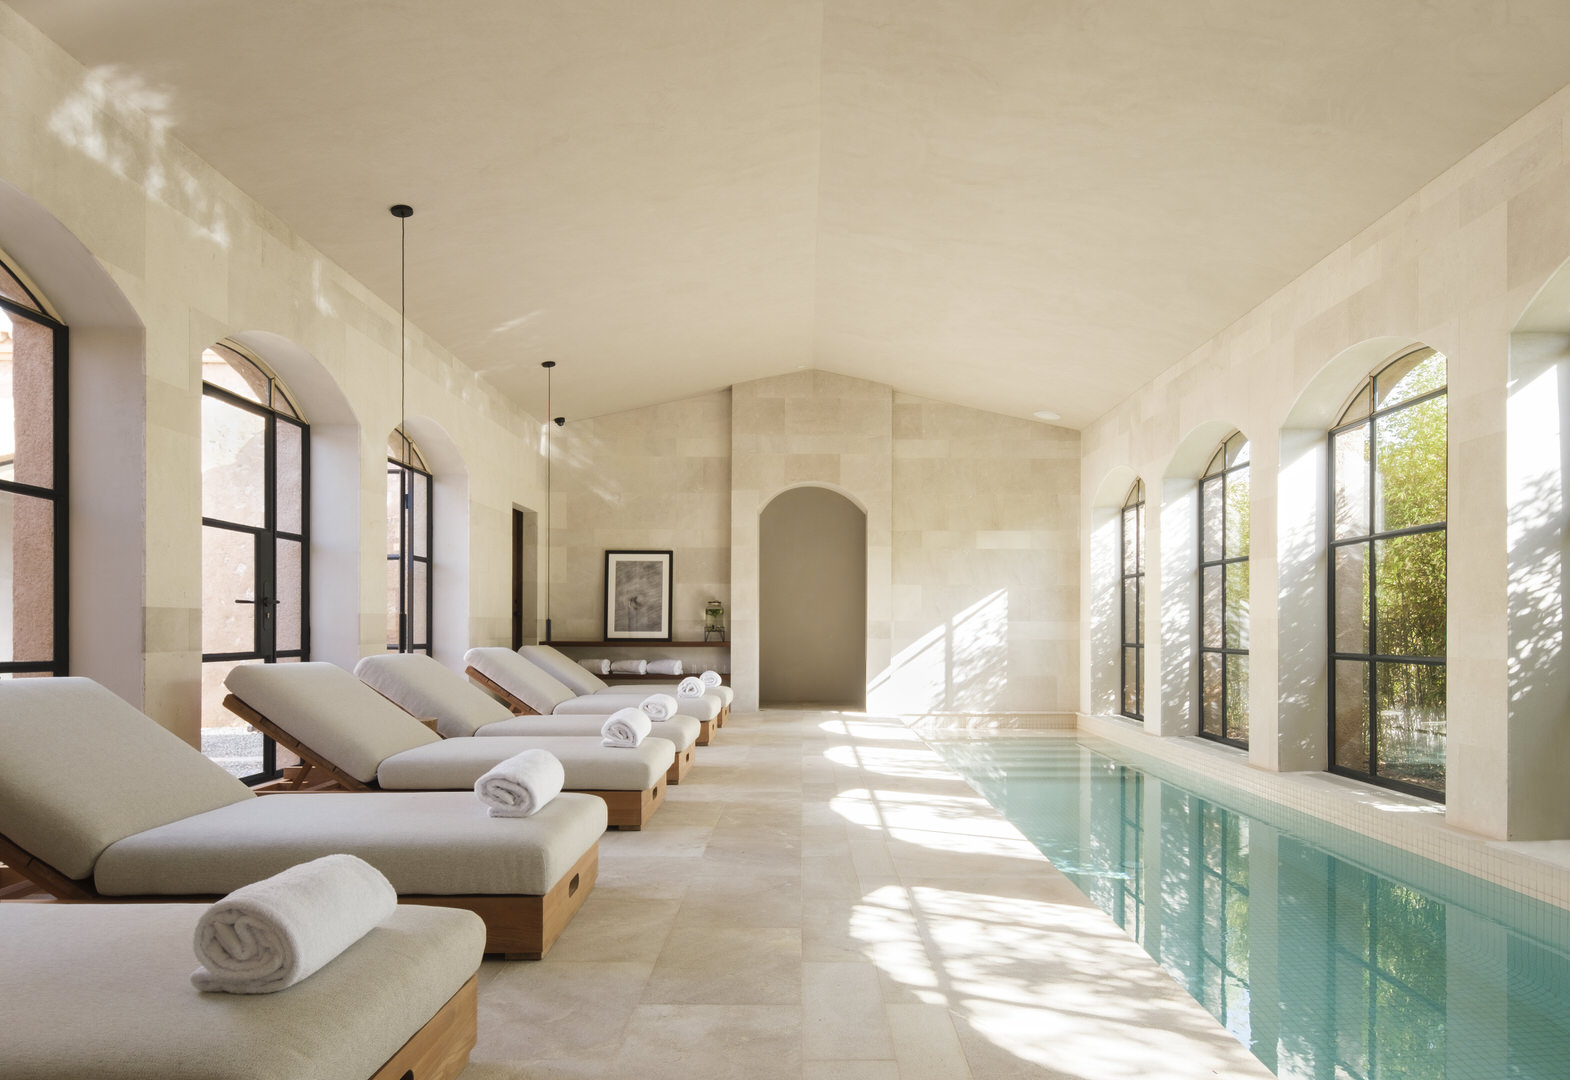 Can Ferrerata - a perfect luxury hotel in Mallorca. Photo by: Arturo+Lauren